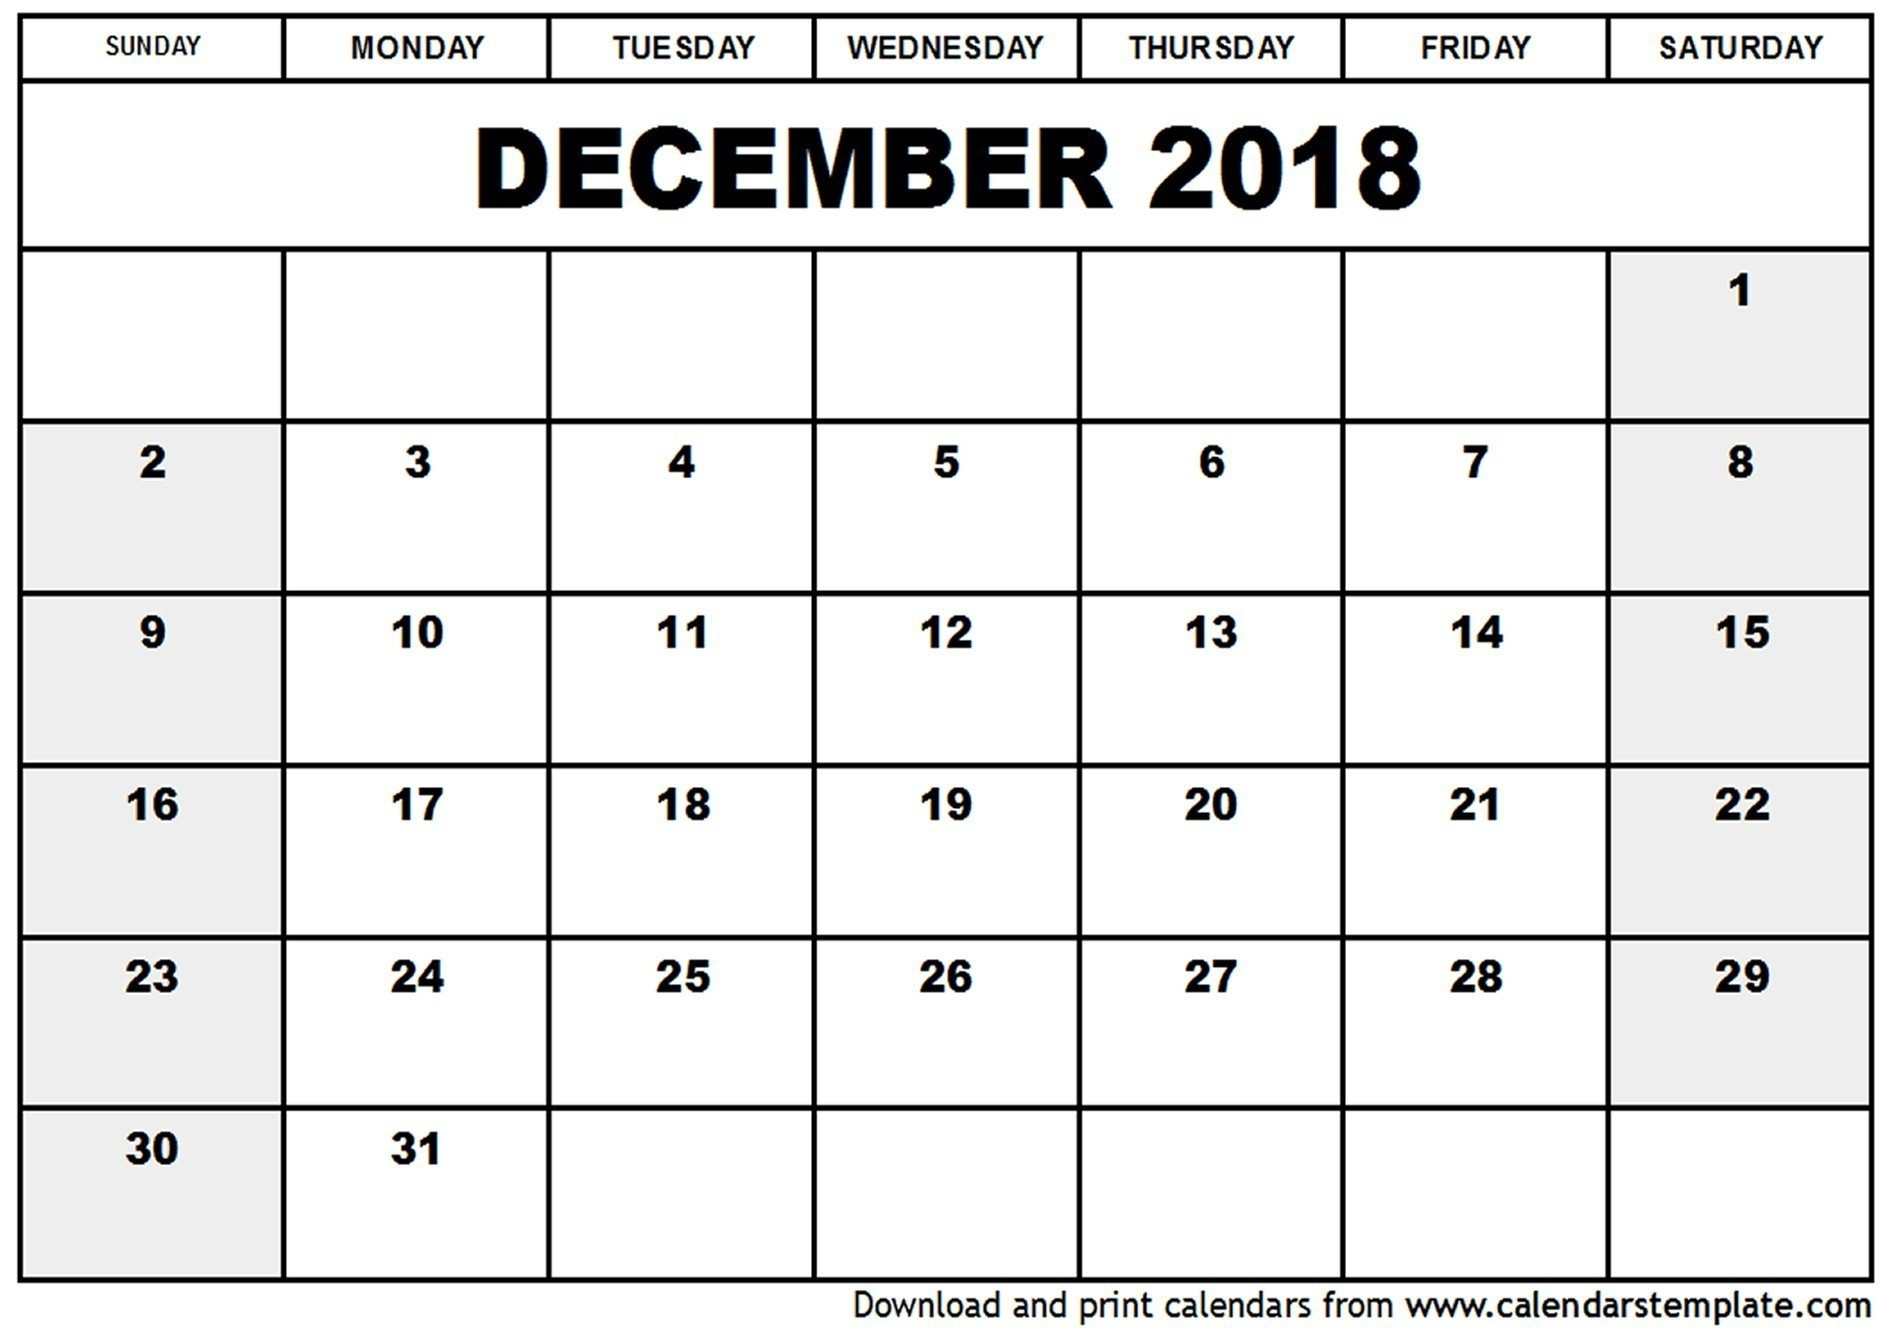 Julian Calendar No Leap Year  Calendar Inspiration Design in 2018 Julian Calendar